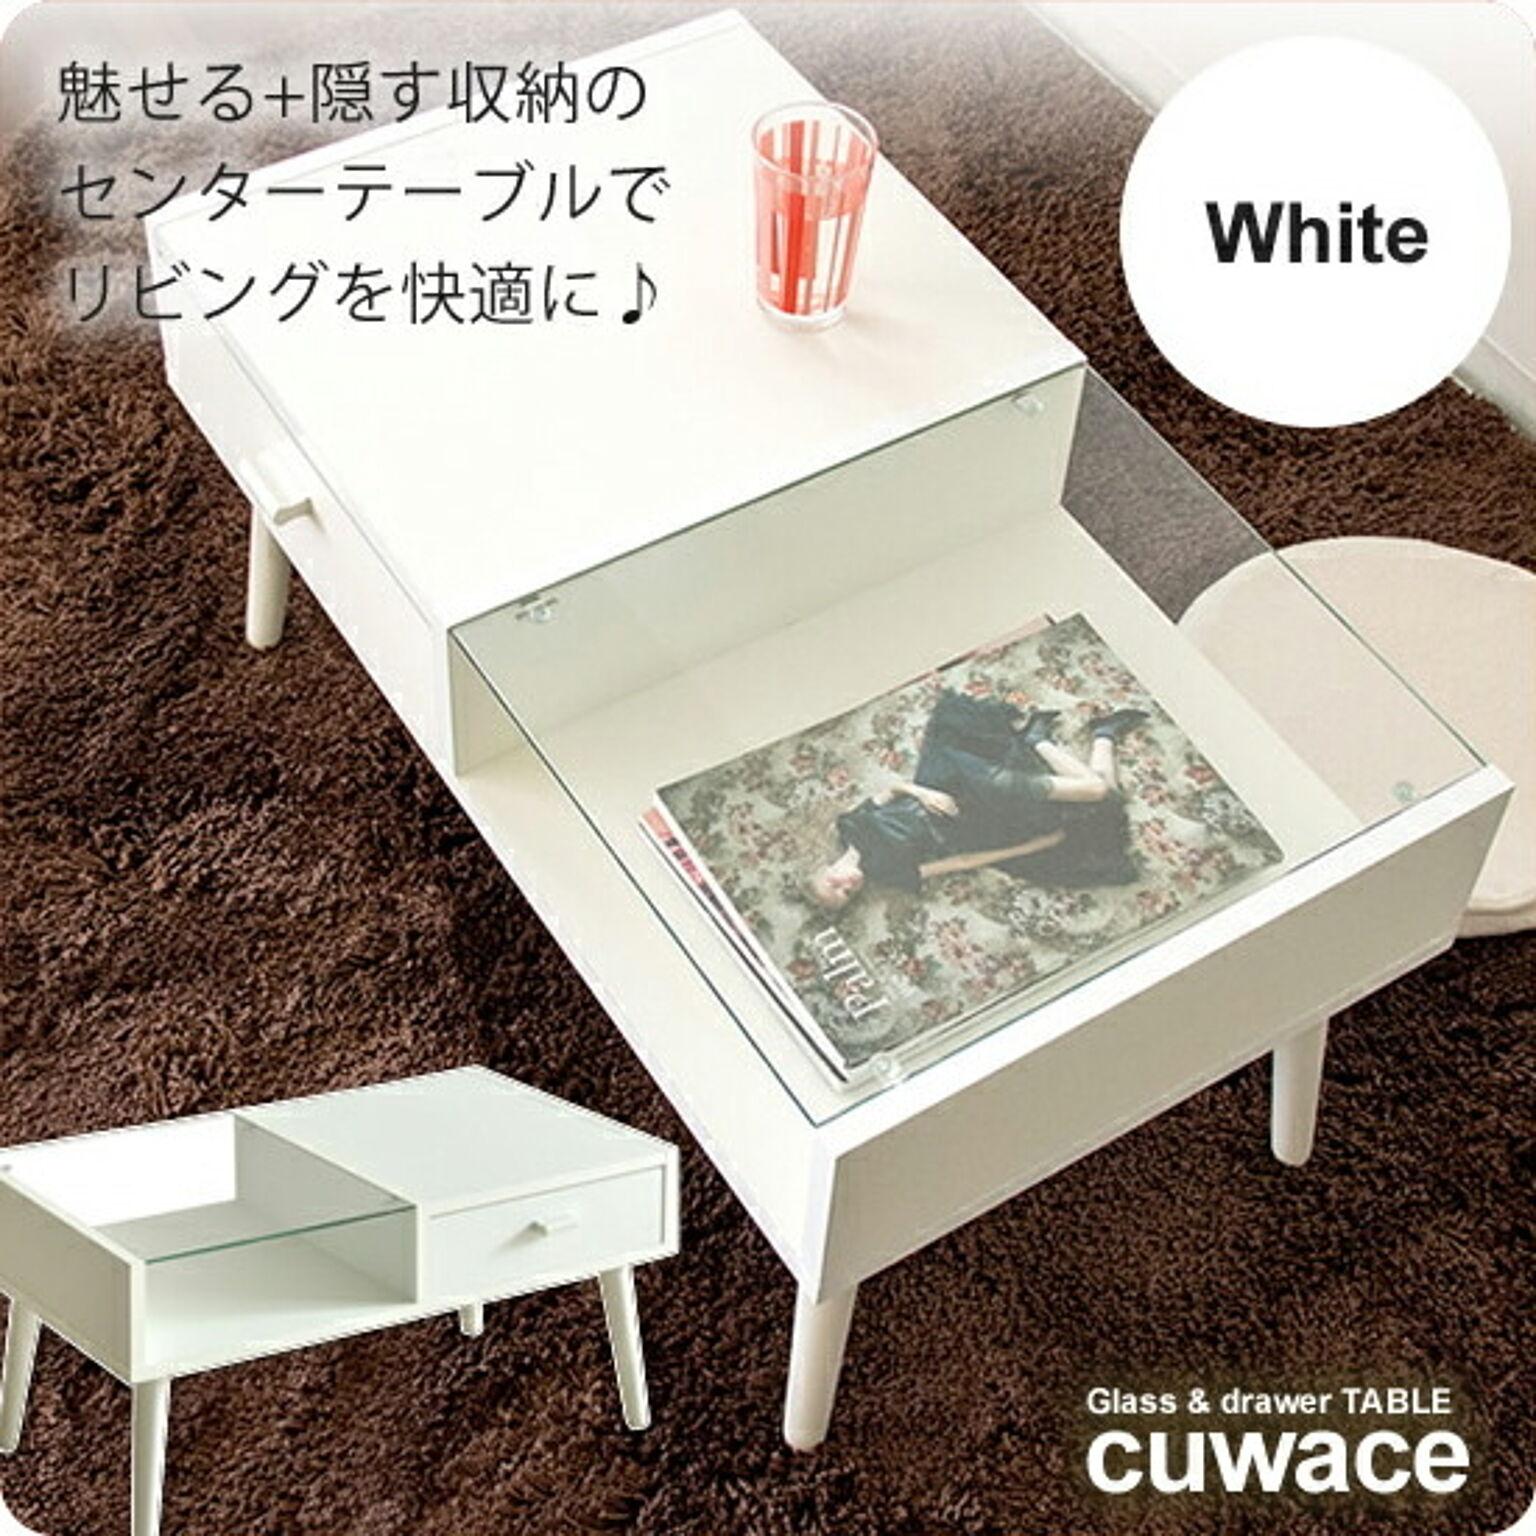 センターテーブル ローテーブル コーヒーテーブル ガラステーブル ： ホワイト【cuwace】 ホワイト(white) (アーバン) リビングテーブル 